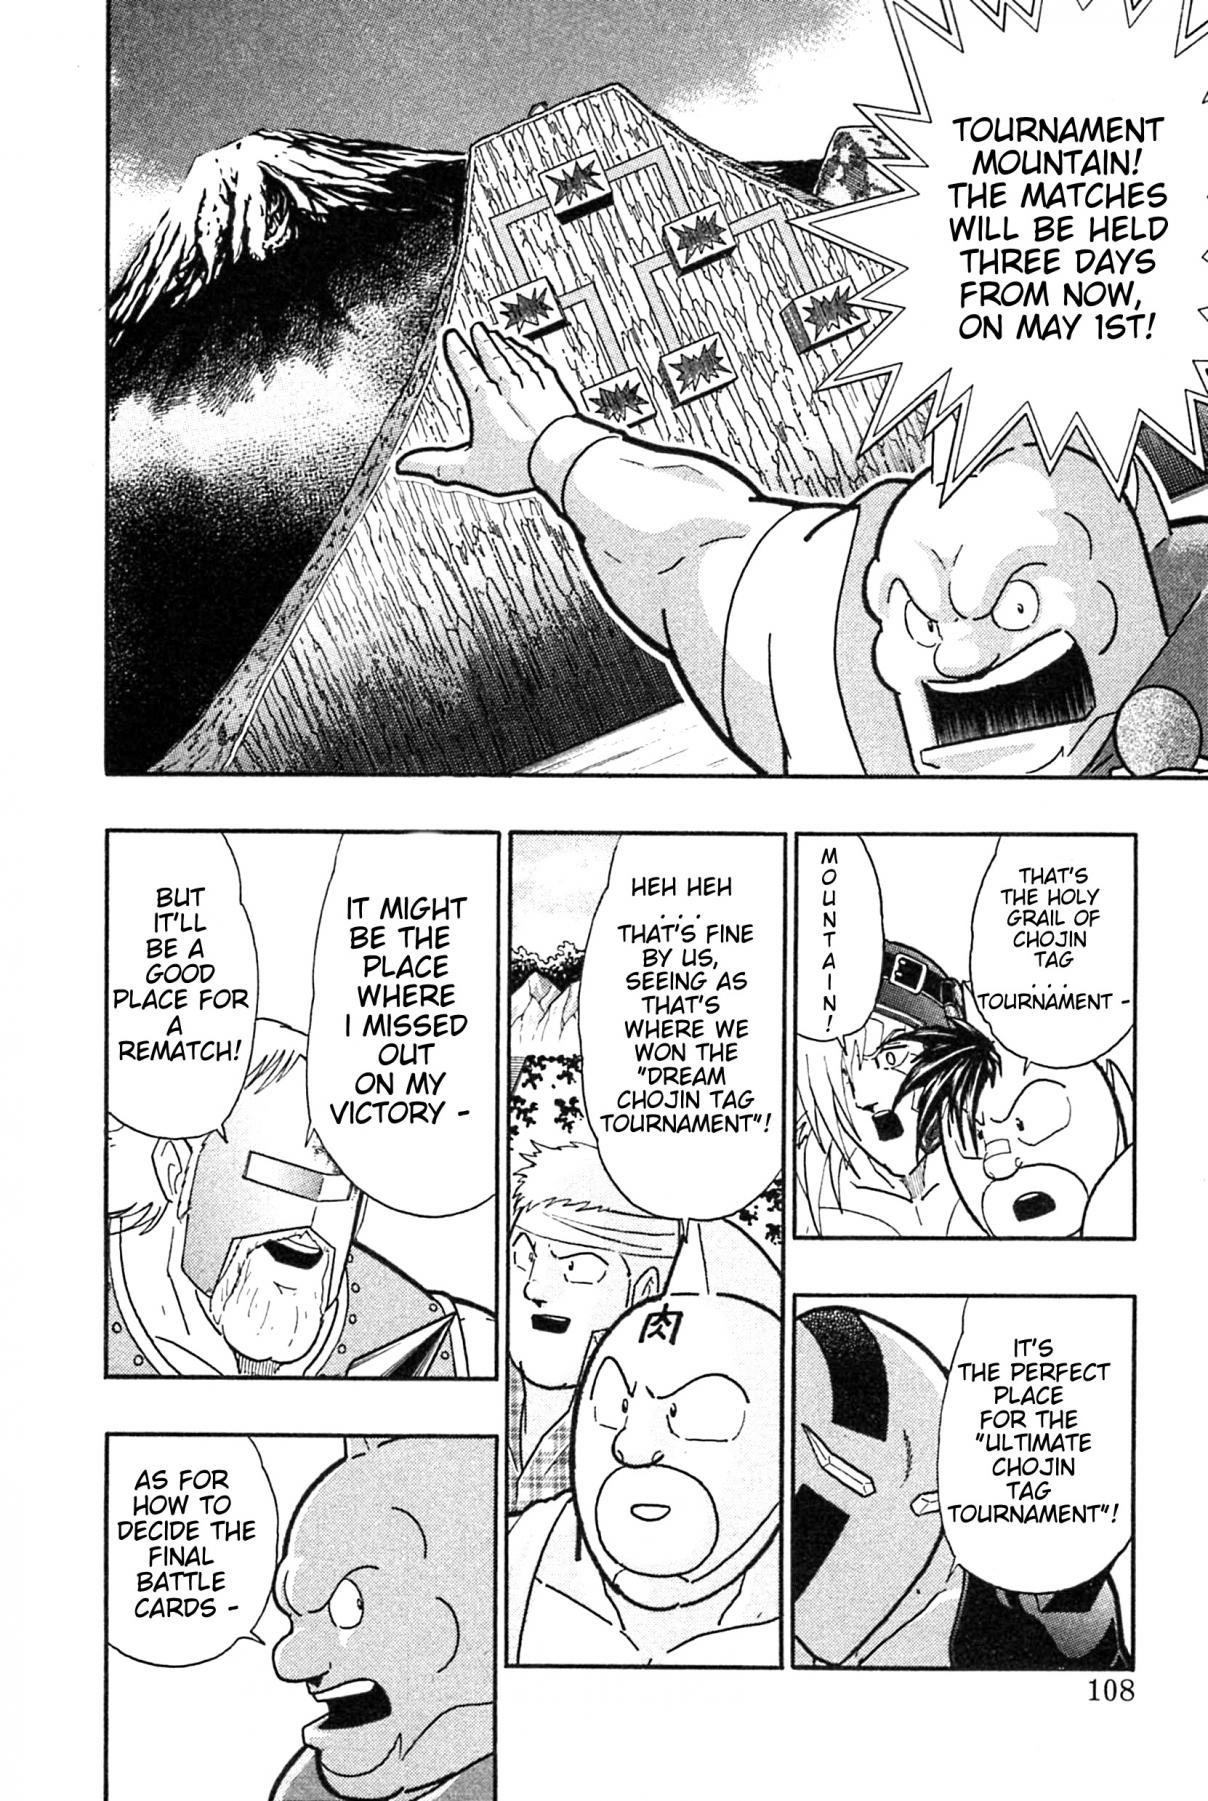 Kinnikuman II Sei: Kyuukyoku Choujin Tag Hen Vol. 17 Ch. 183 The Big Incident at Shinobazu Pond!